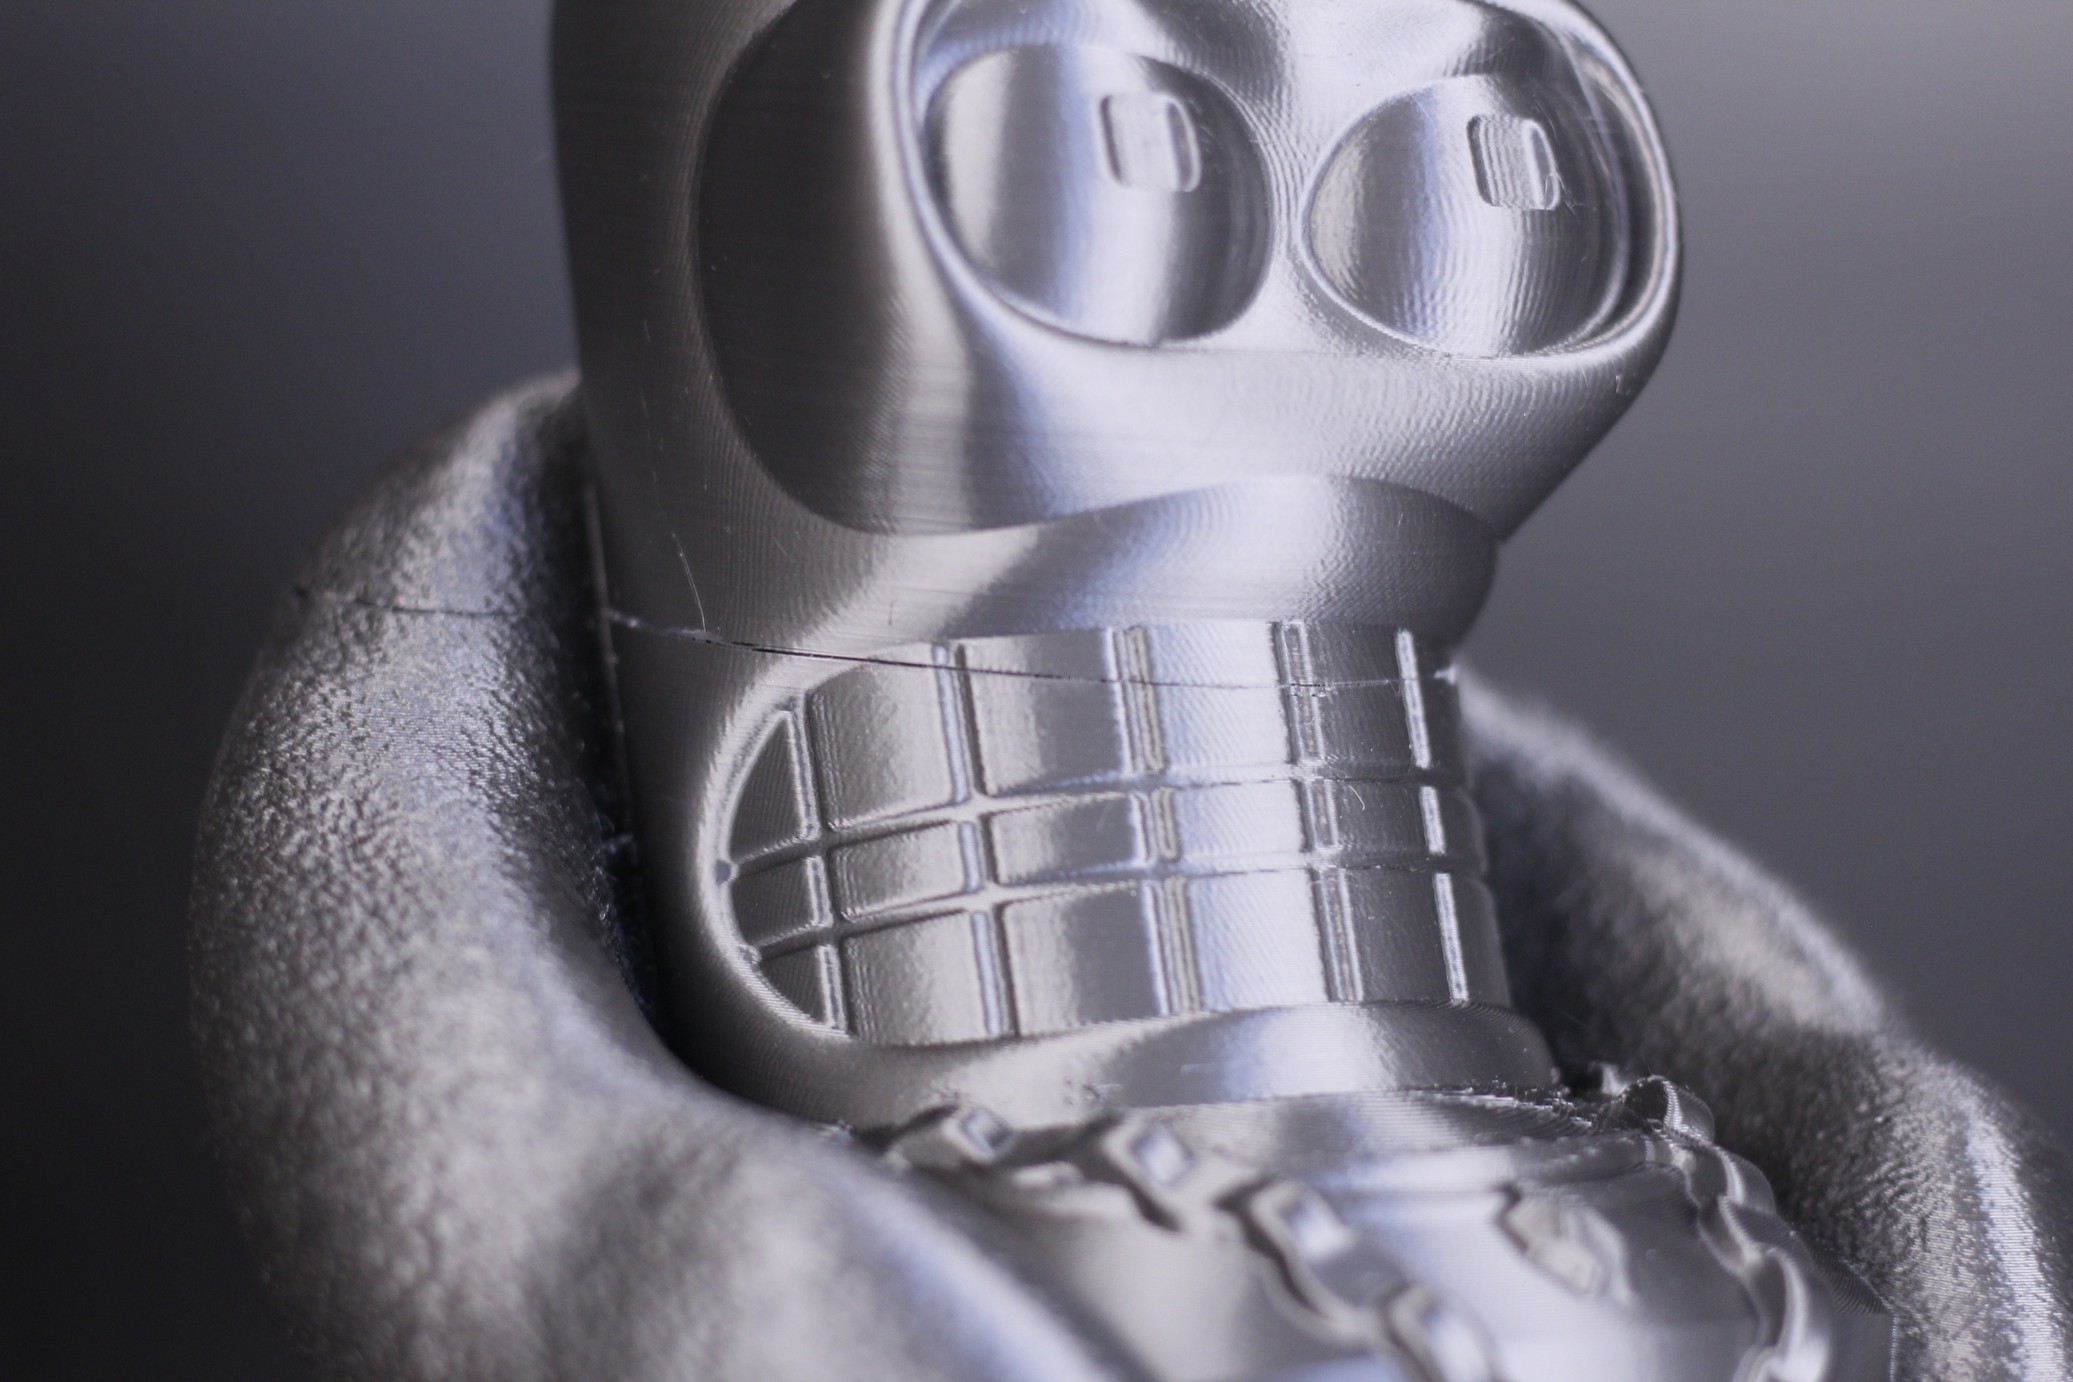 Bender model printed on Anycubic Kobra Max 6 | Anycubic Kobra Max Review: Big Printer For People with Big Dreams